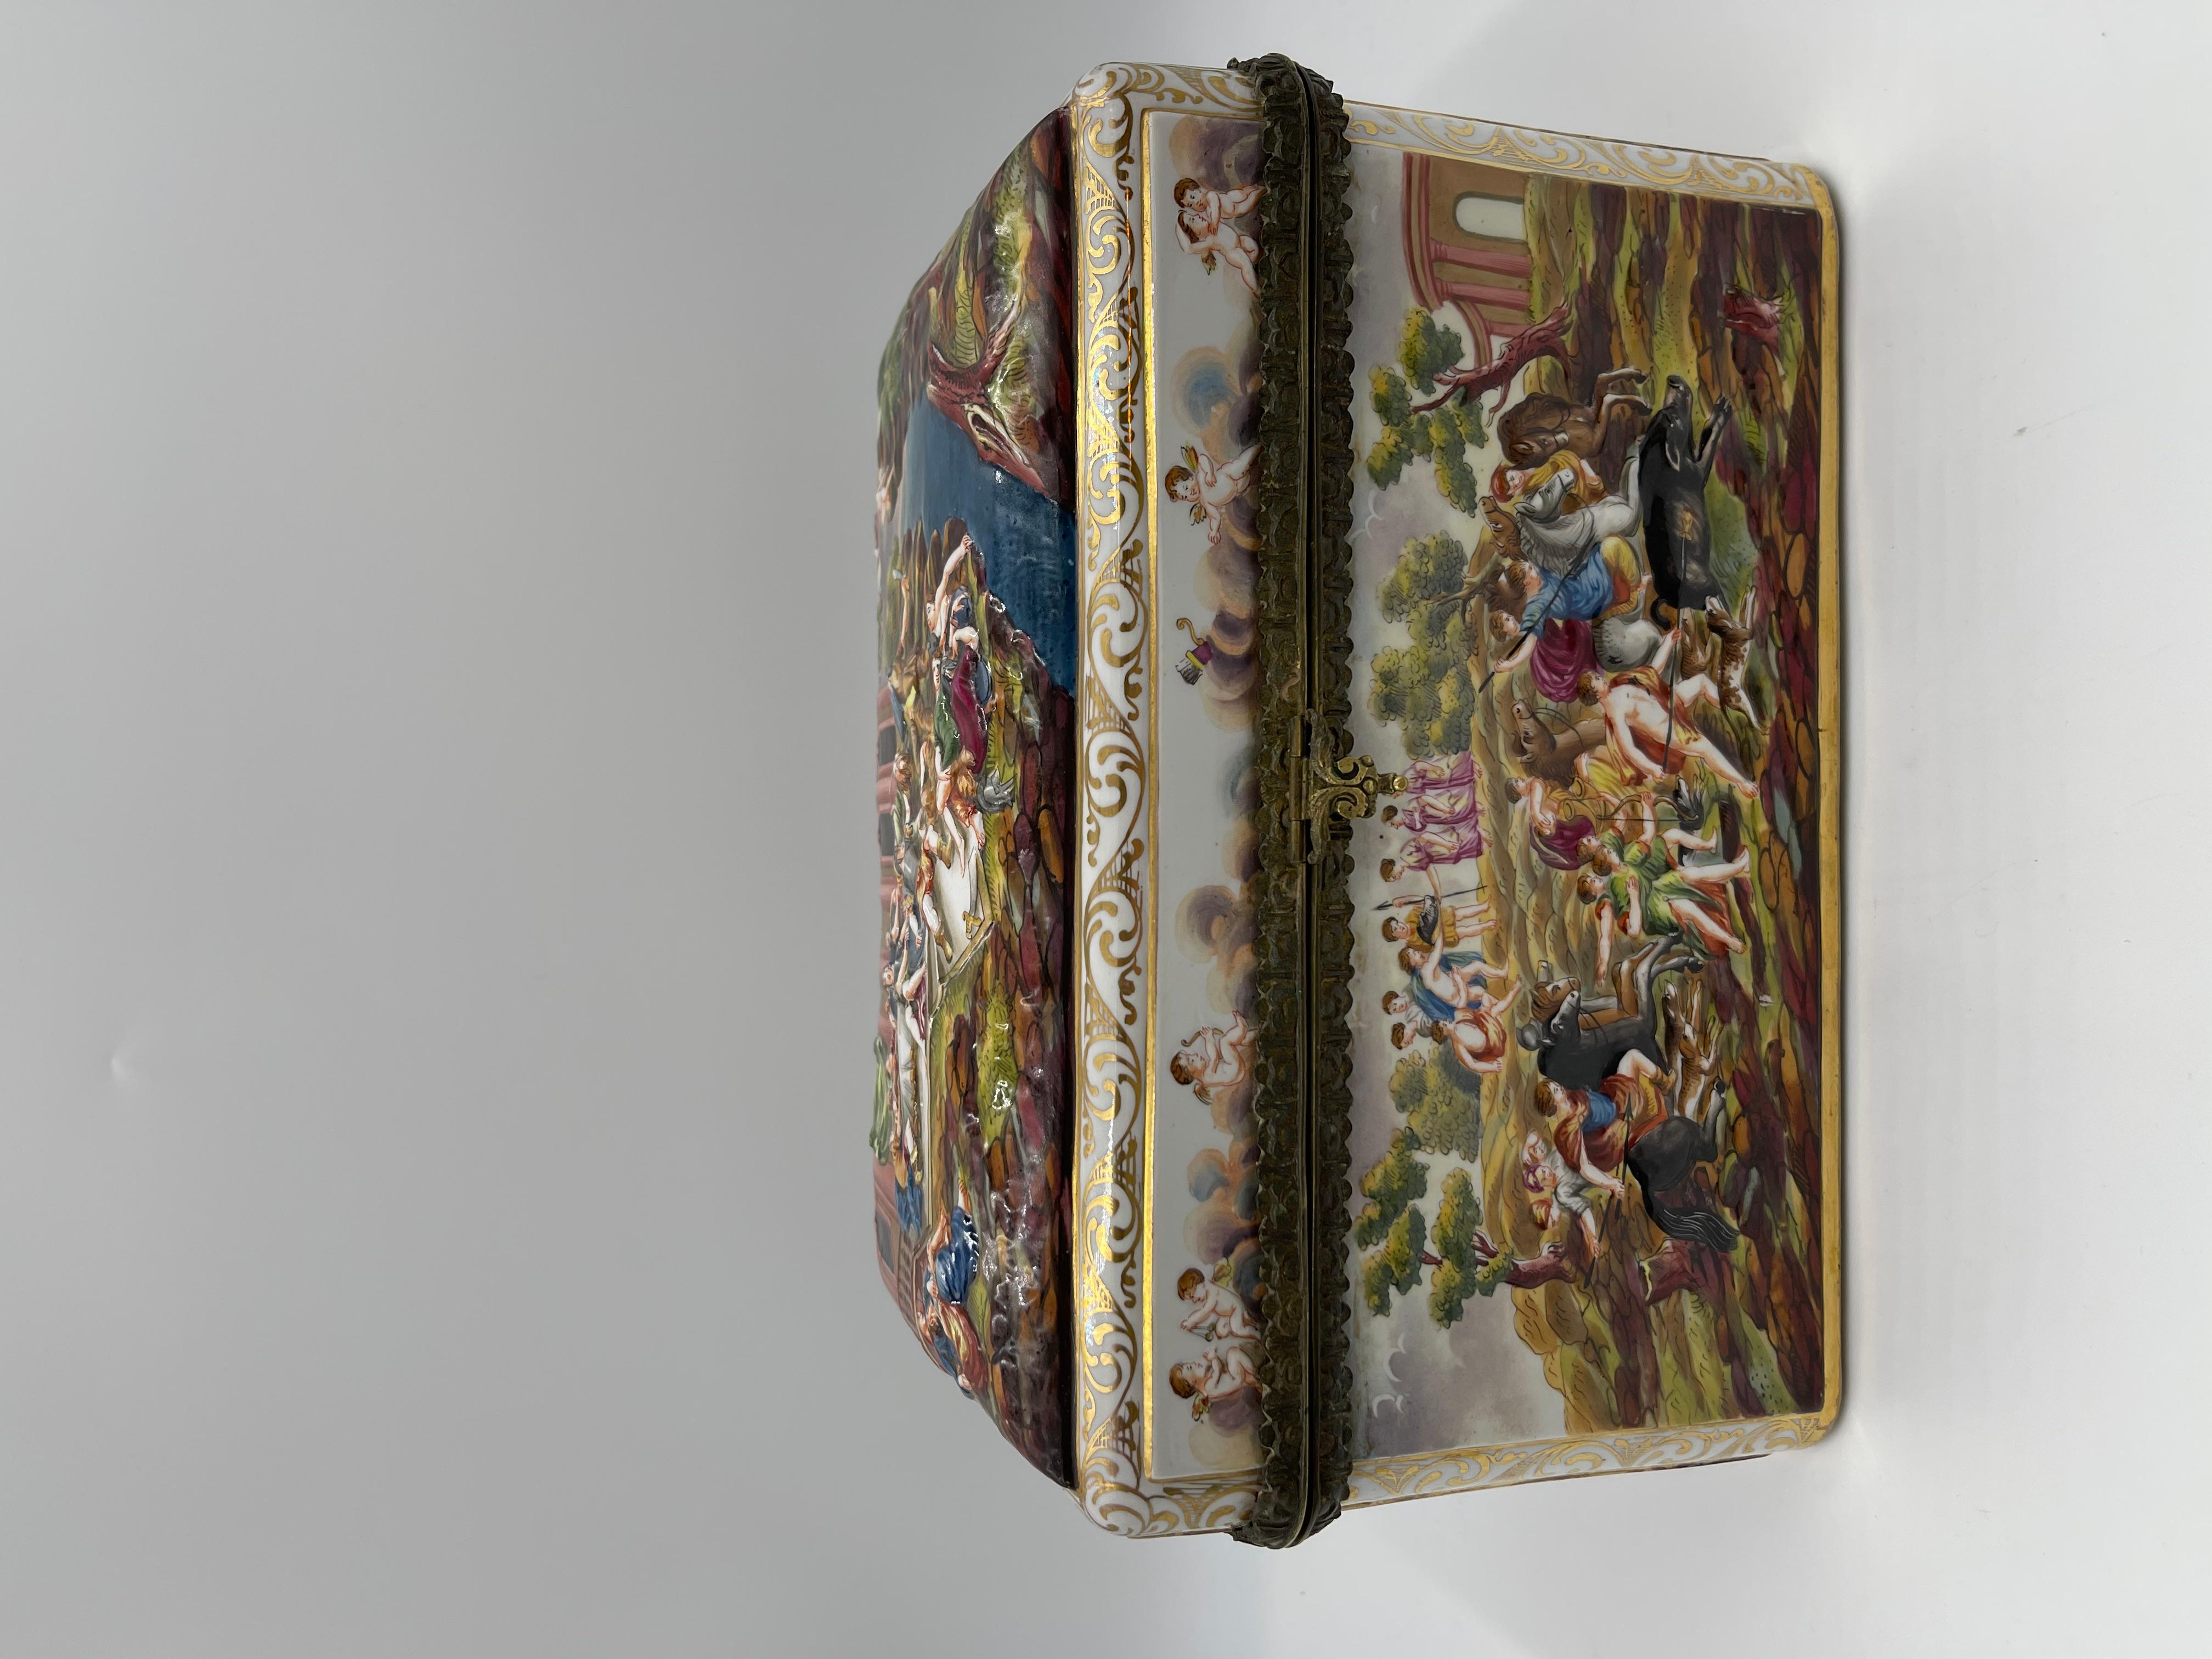 Rare Large 19th C. Capodimonte Porcelain Box / Table Casket For Sale 6